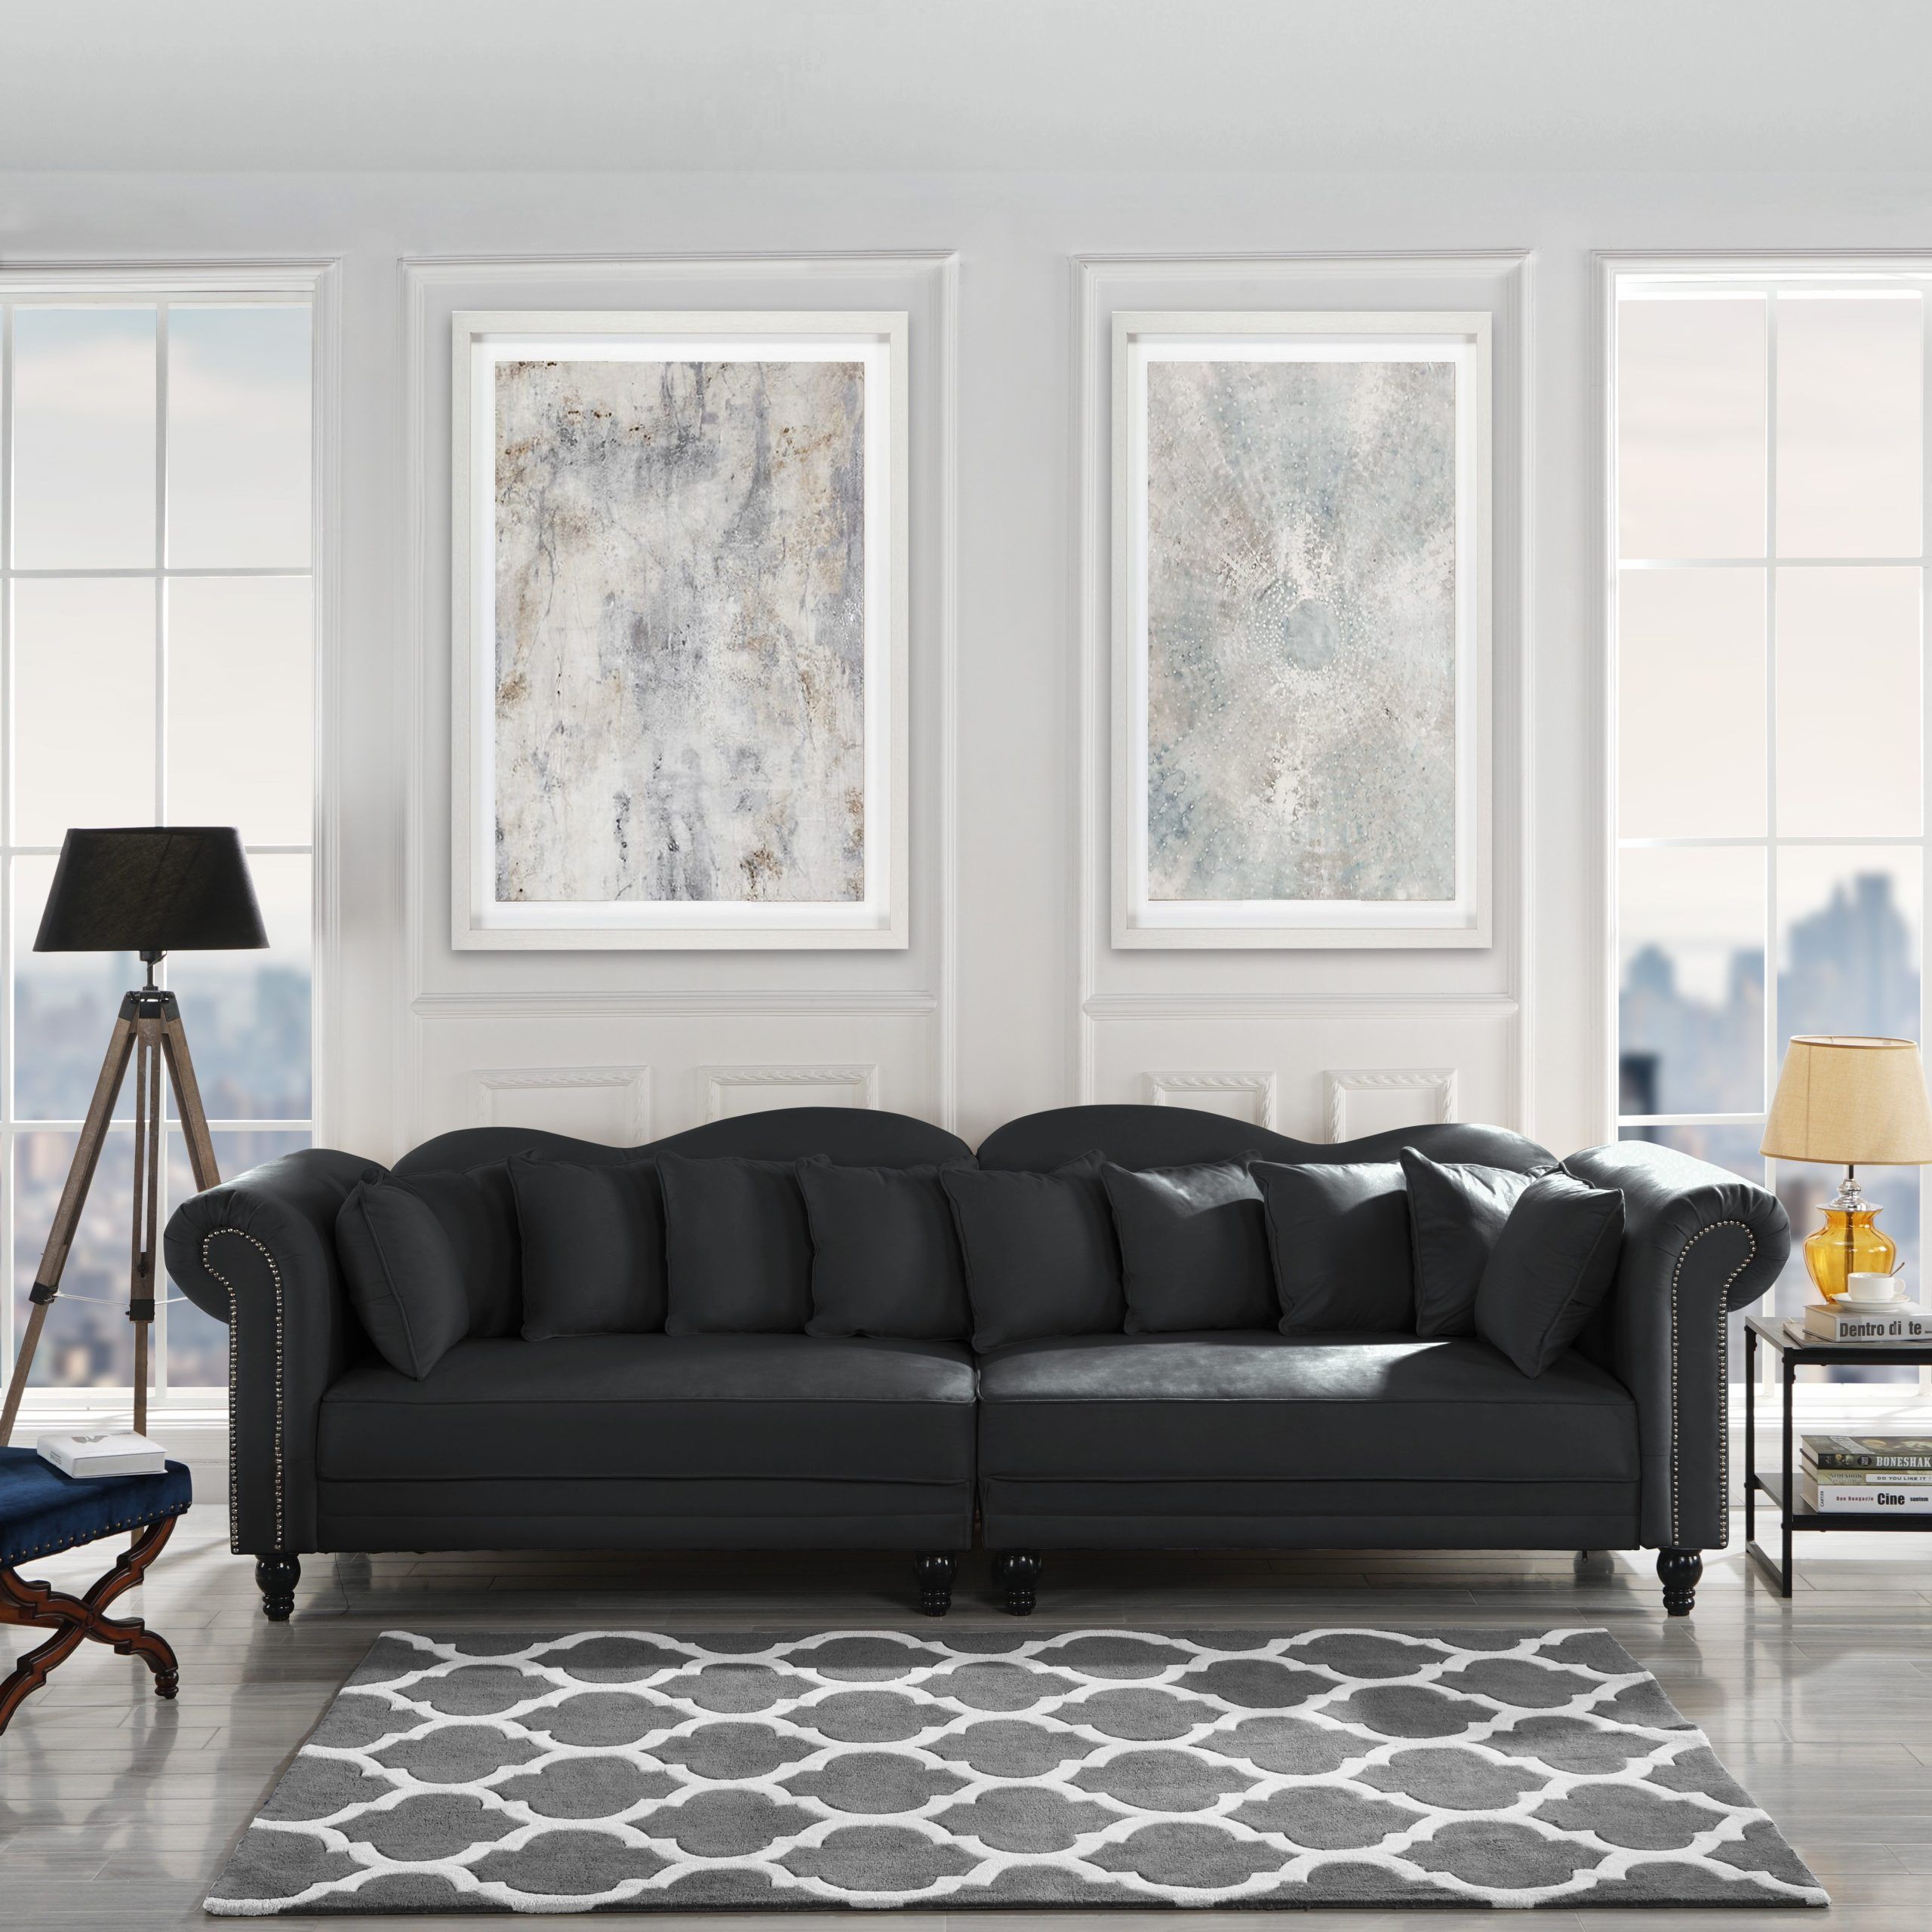 Phenomenal Ideas Of Black Velvet Sofa Living Room Background – Livinghome Inside Black Velvet Sofas (View 11 of 20)